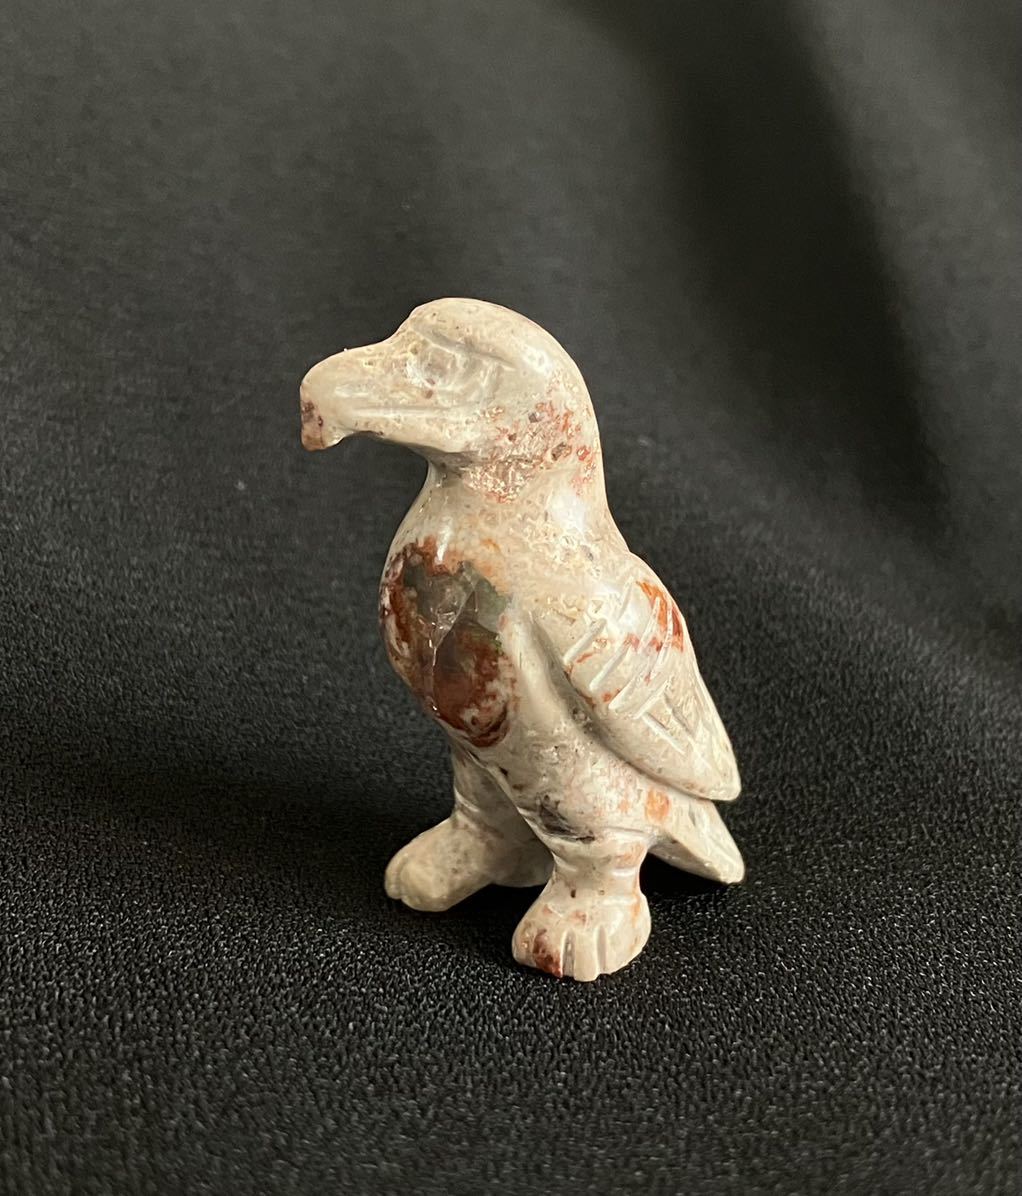 天然石の鳥の彫刻 アメジスト原石に乗った鳥の彫物のインテリア fkip